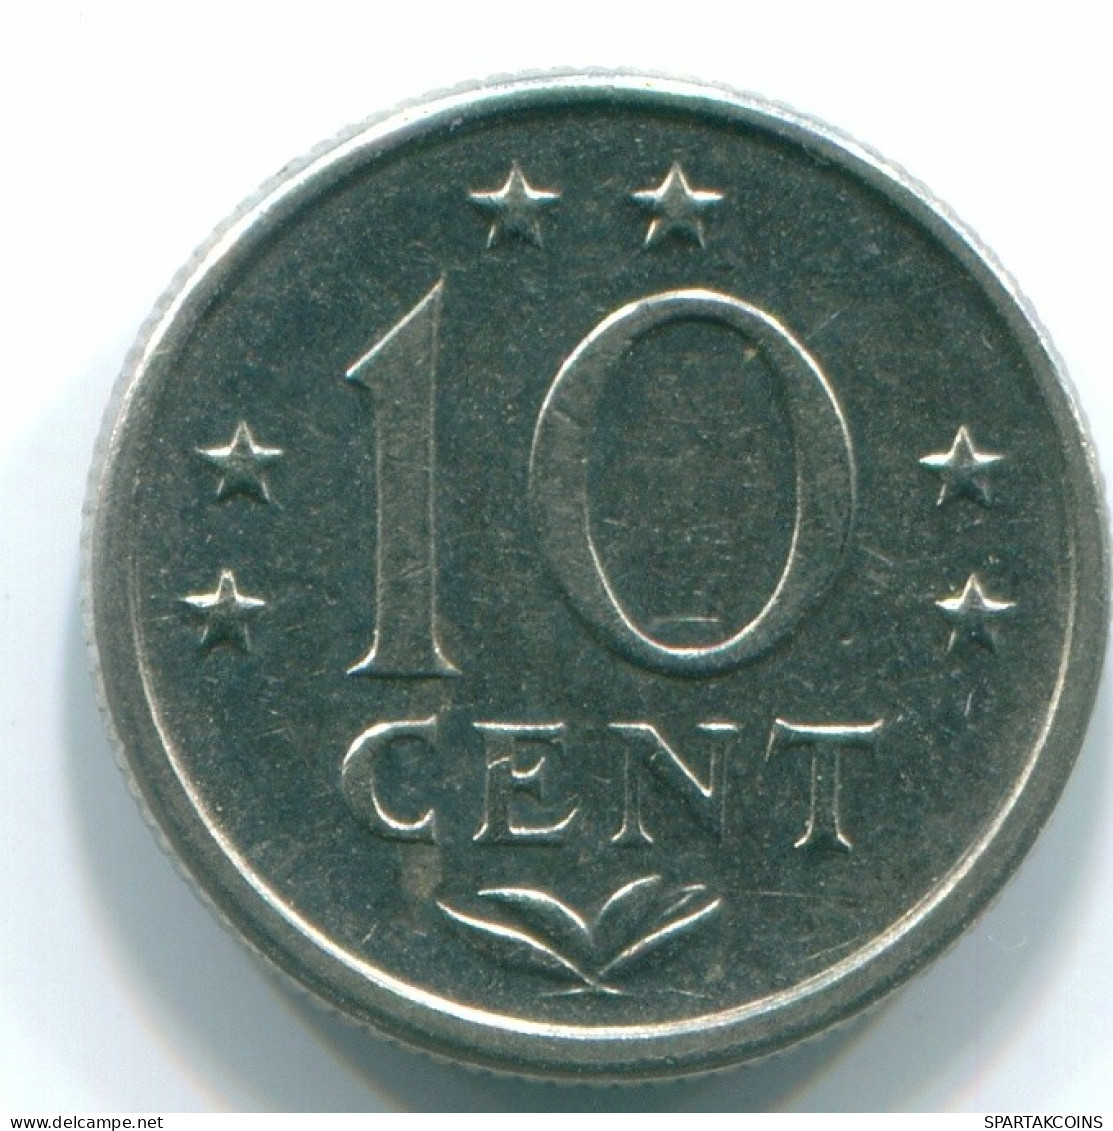 10 CENTS 1980 NIEDERLÄNDISCHE ANTILLEN Nickel Koloniale Münze #S13742.D.A - Niederländische Antillen